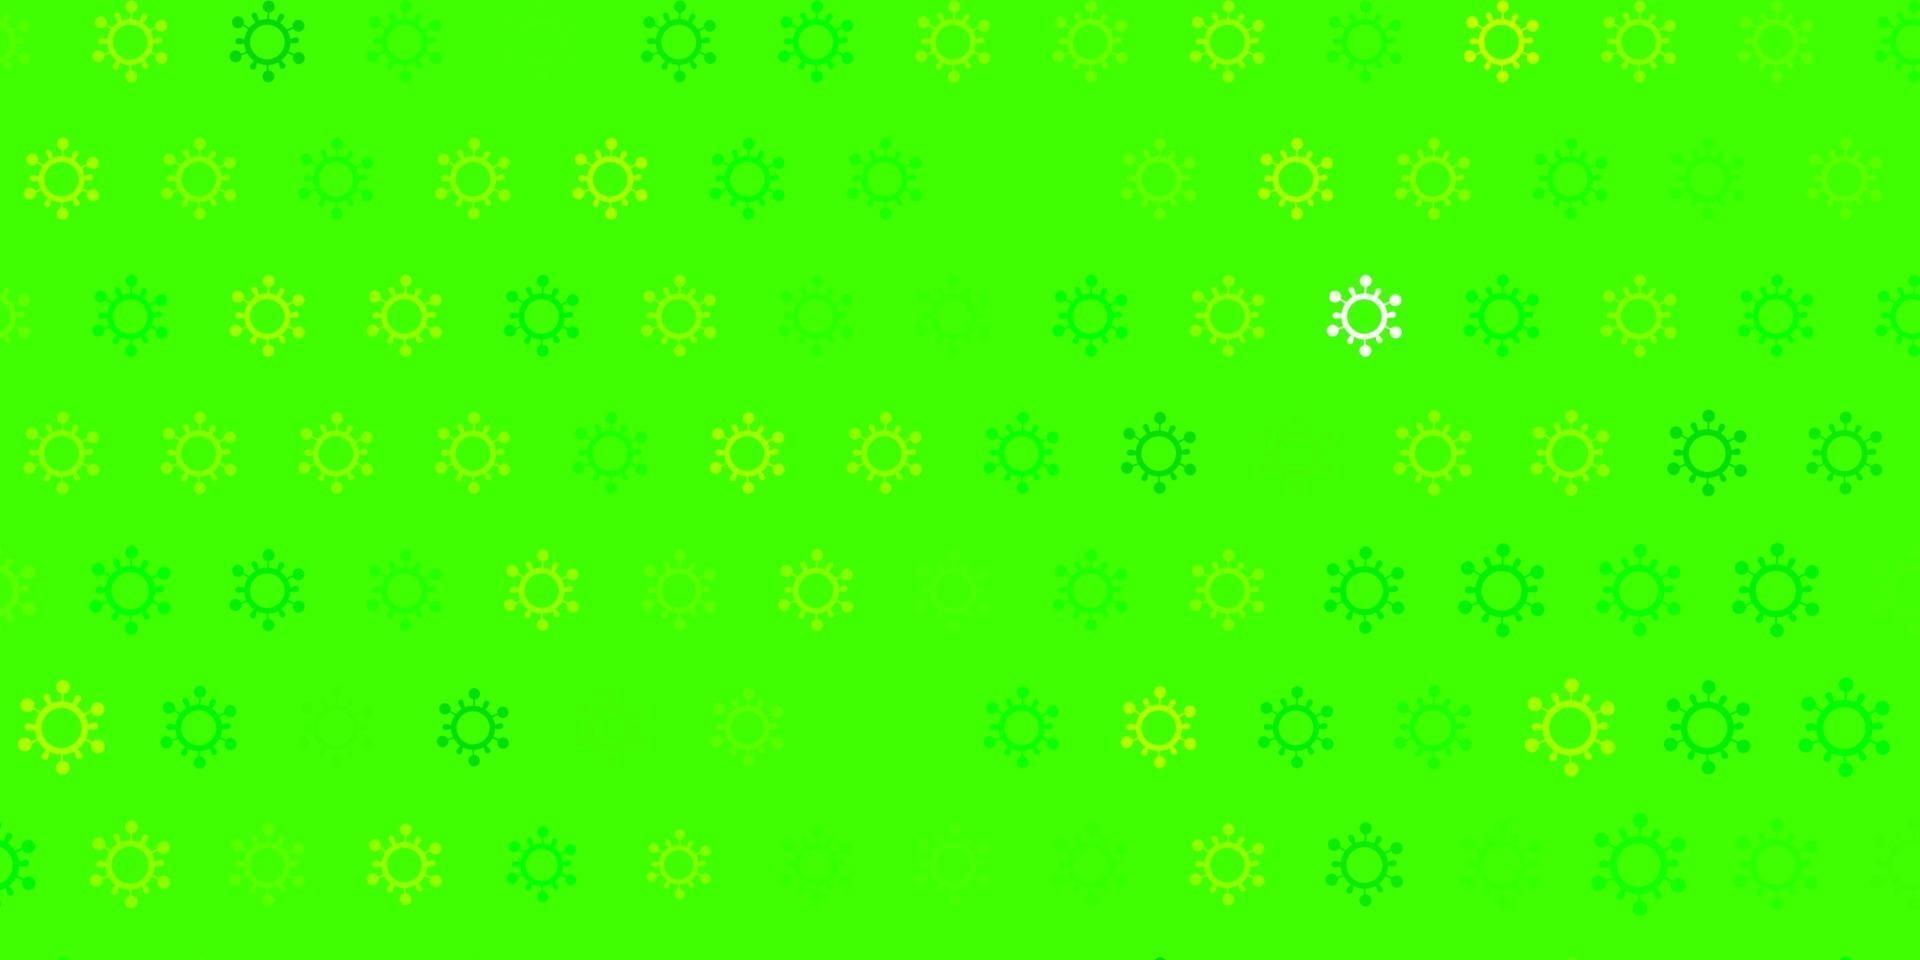 trama vettoriale verde chiaro, giallo con simboli di malattia.